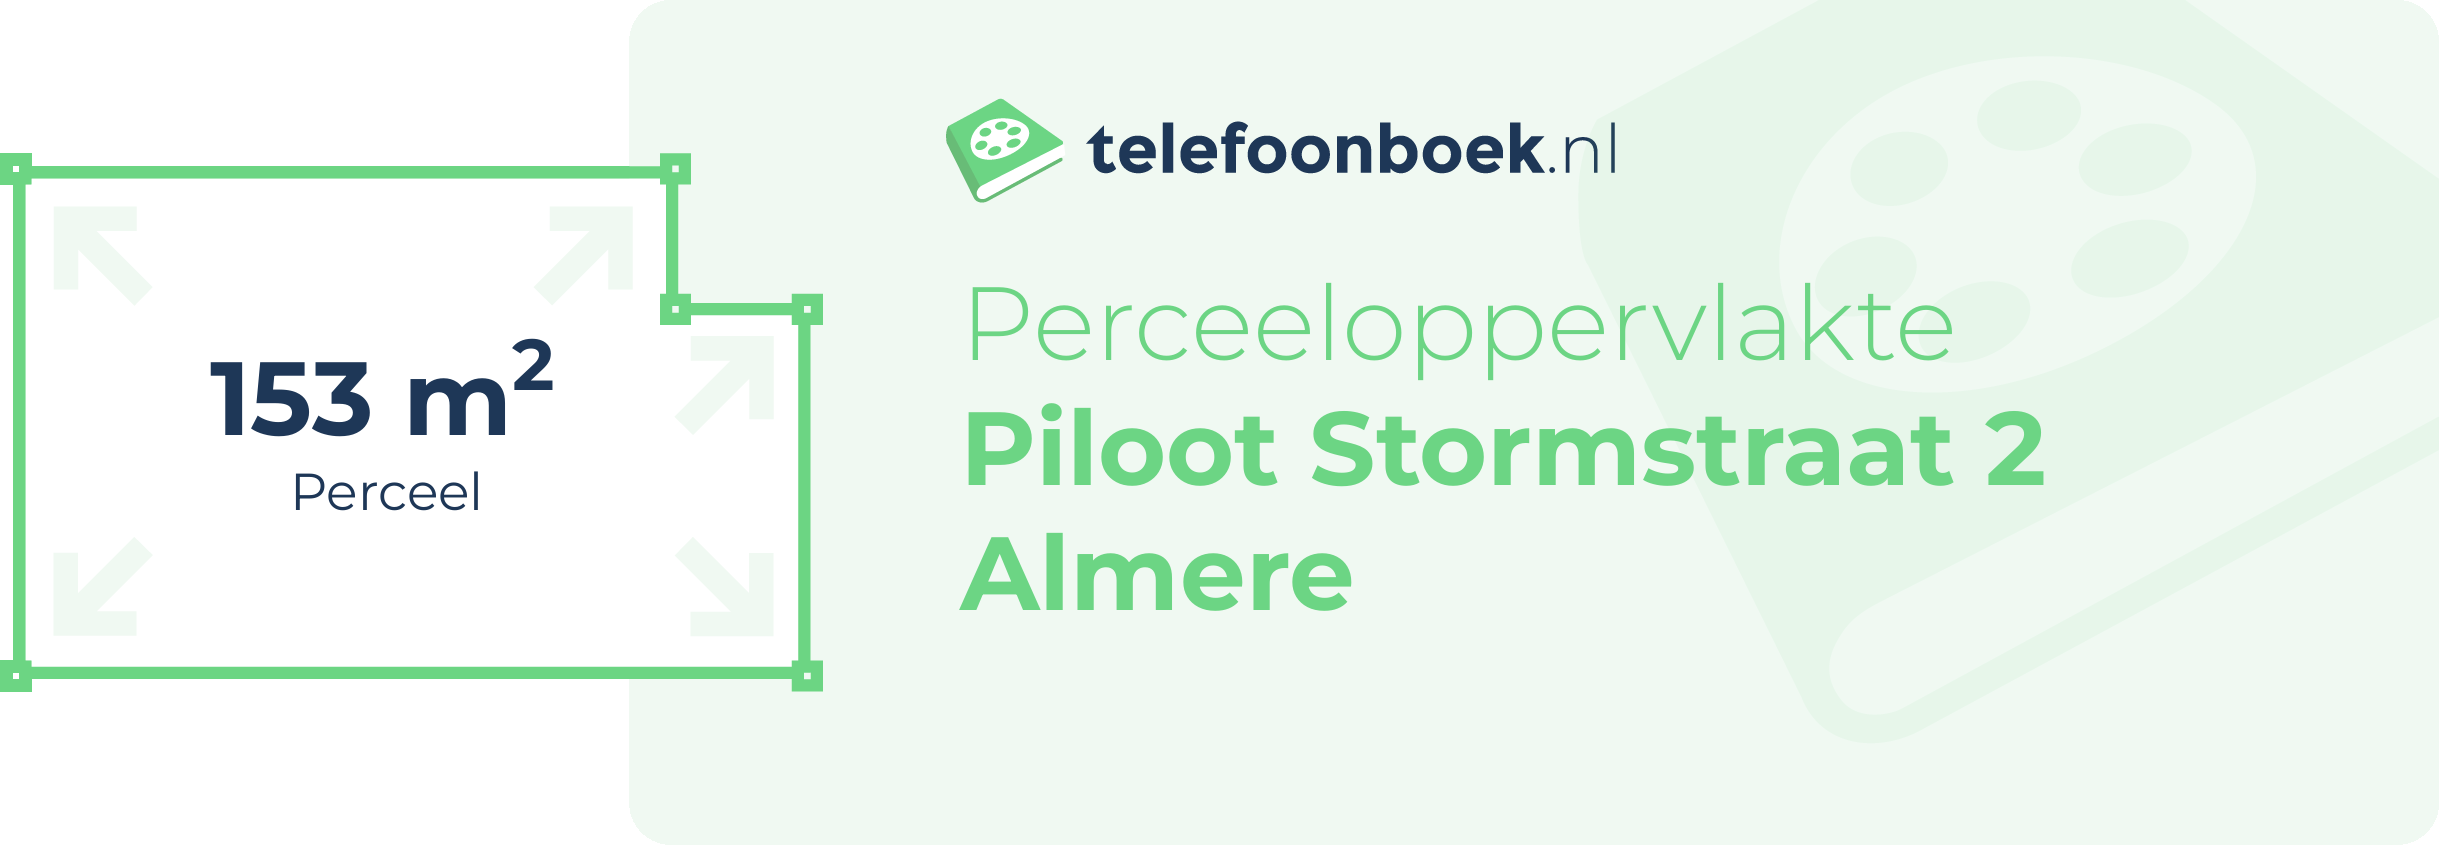 Perceeloppervlakte Piloot Stormstraat 2 Almere